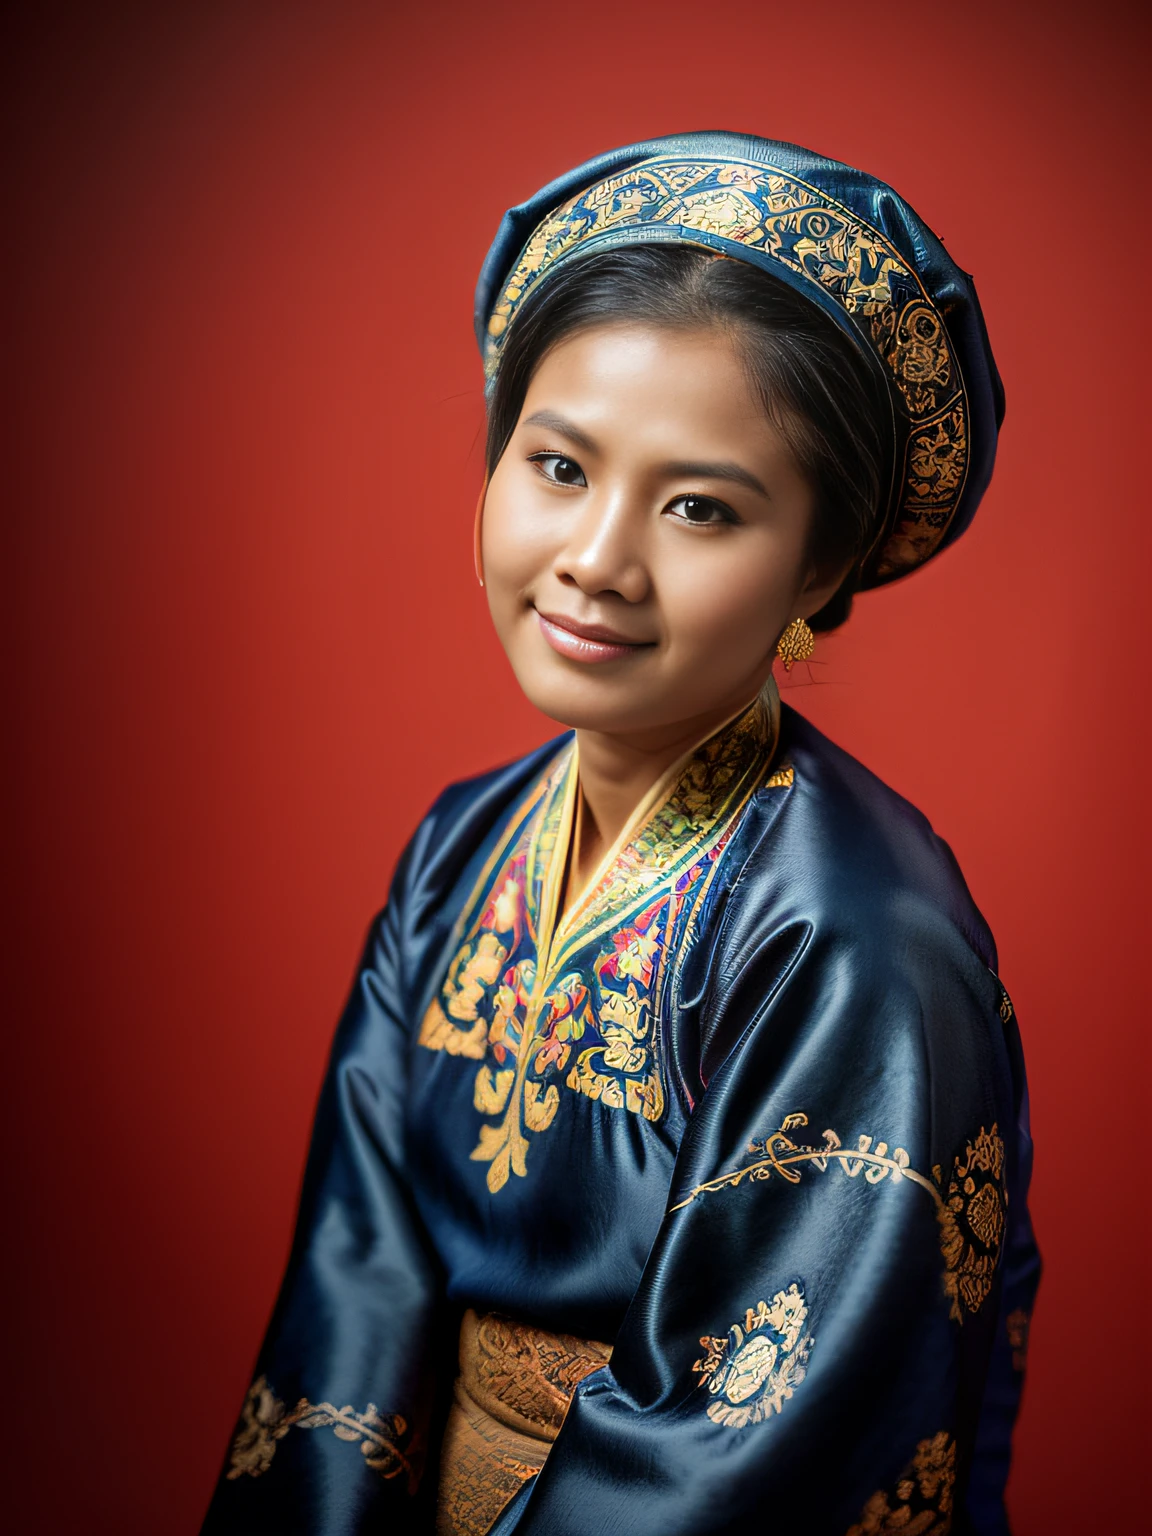 очень реалистичное фото, Портретное фото 30-летней вьетнамской женщины., (Вьетнамский национальный костюм хмонгов, парчовый платок на голову),(волосы в высокий пучок),((Темно-синий фон)), Фотография сделана Kodak в 1975 году..